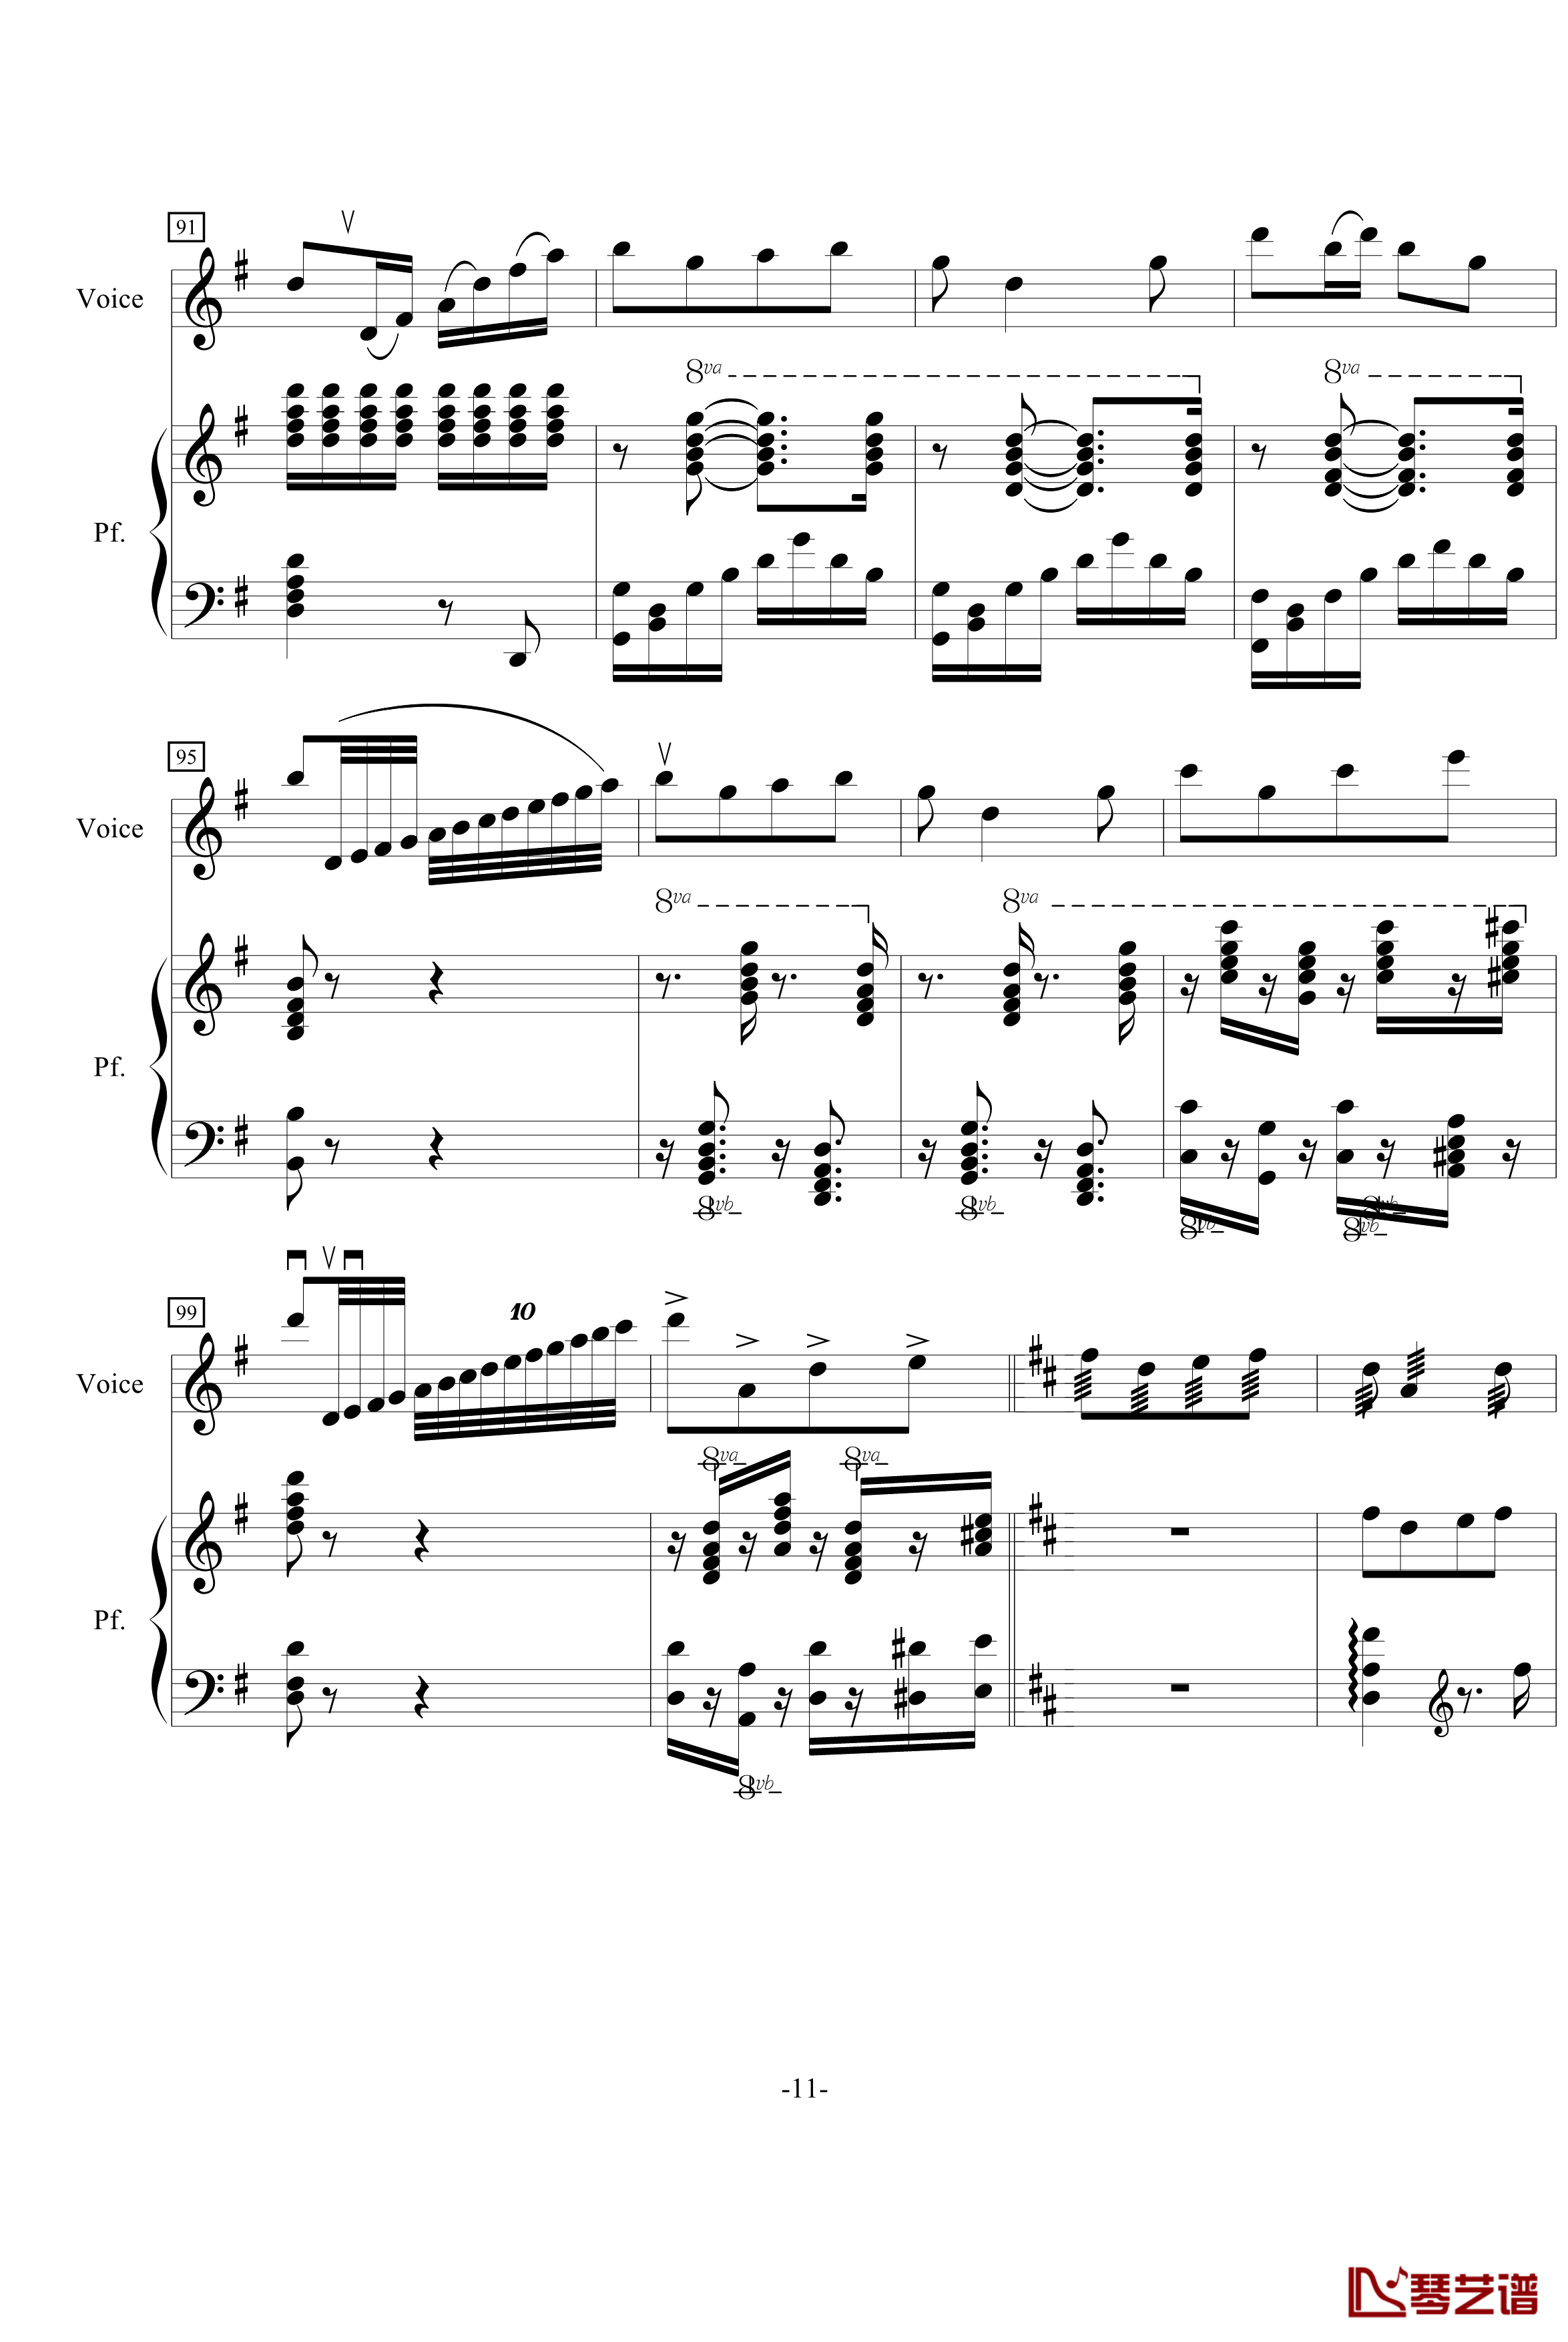 音乐会练习曲钢琴谱-周耀锟11